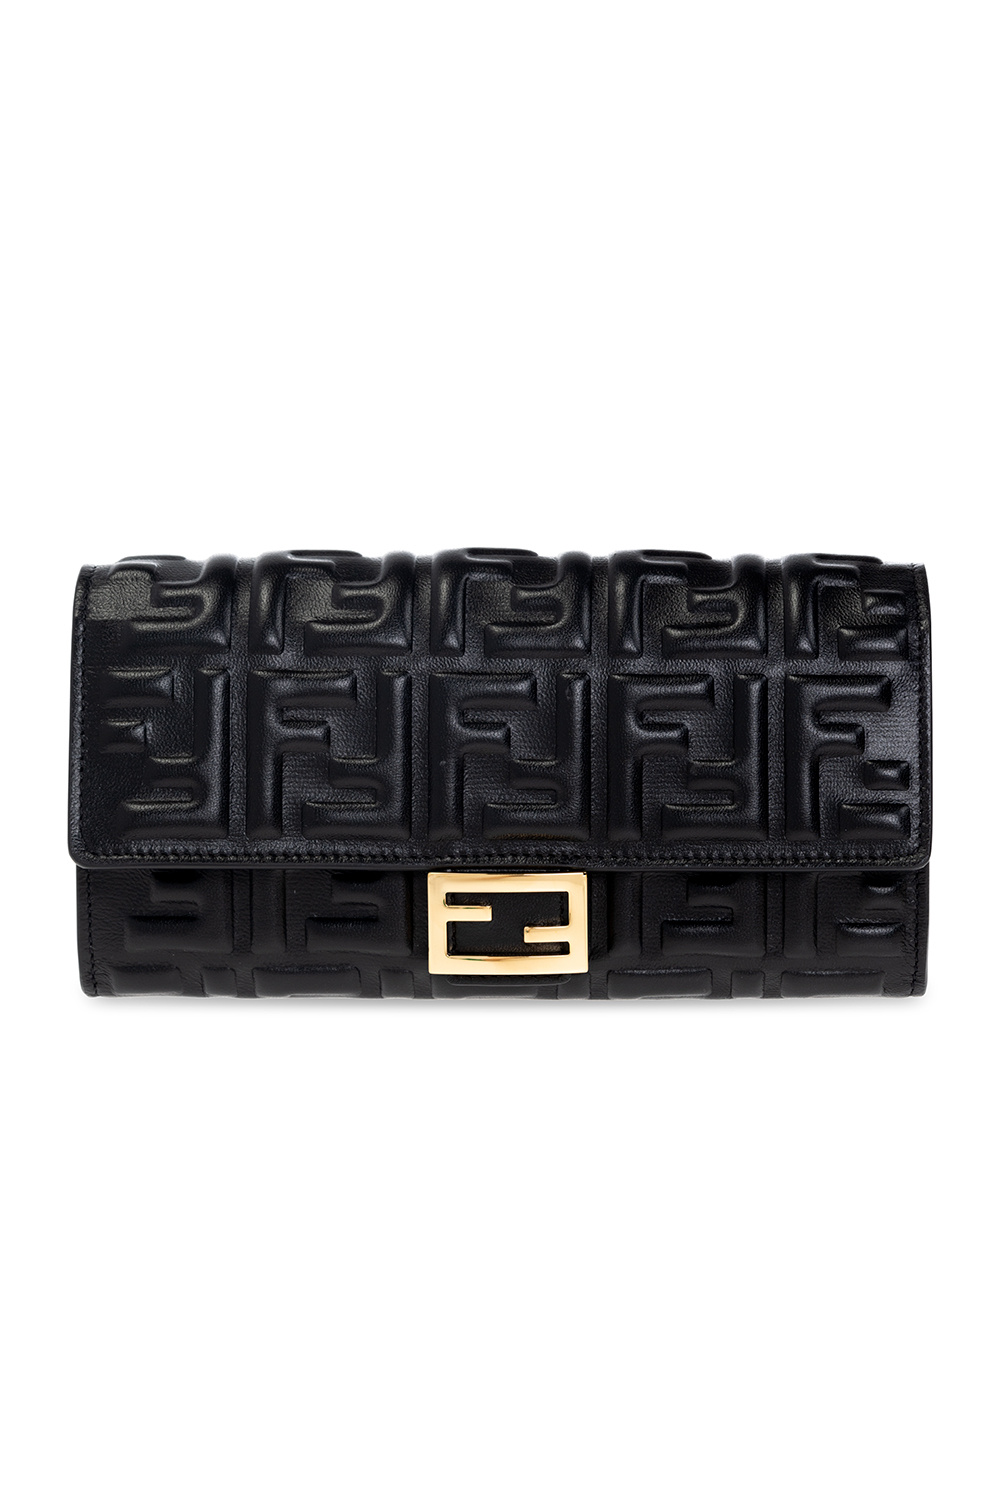 Fendi ‘Continental Baguette’ leather wallet